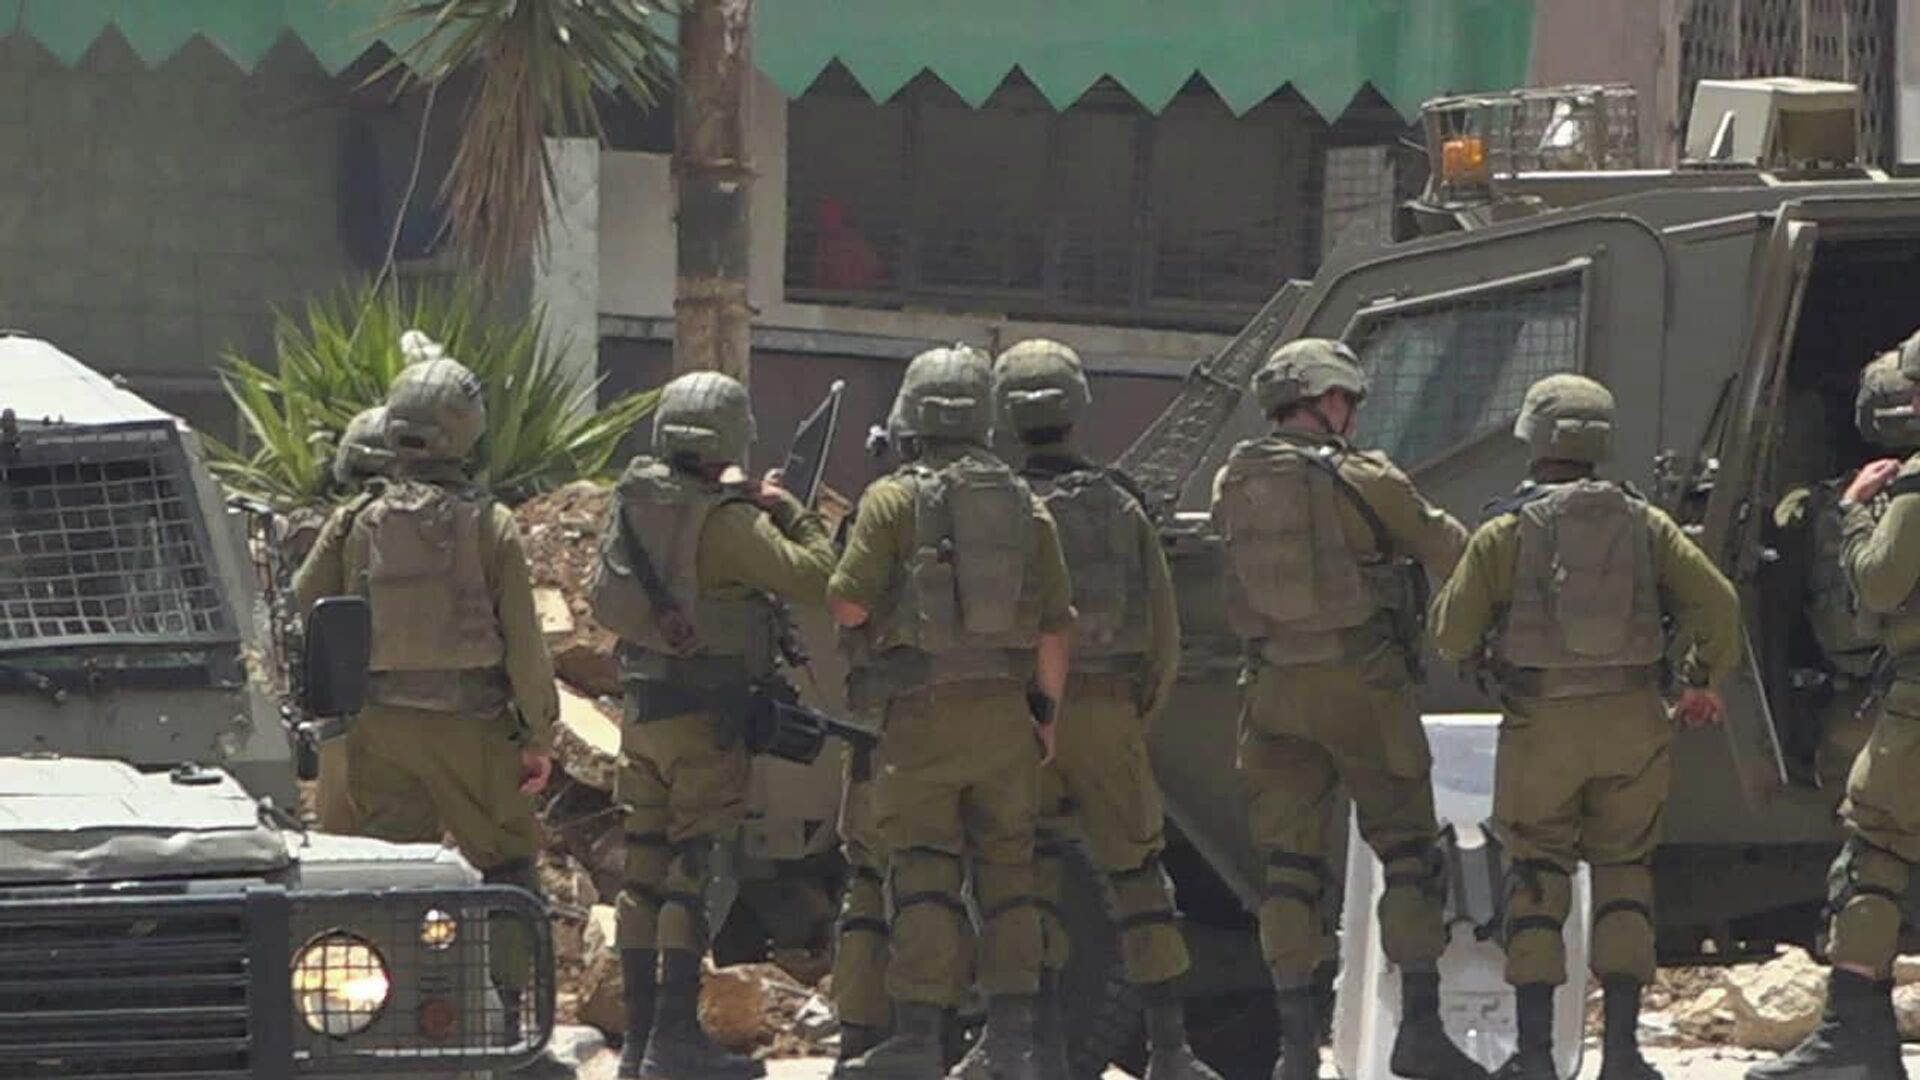 الجيش الإسرائيلي يقمع مسيرة الاعلام الفلسطينية جنوب نابلس  - سبوتنيك عربي, 1920, 27.05.2022